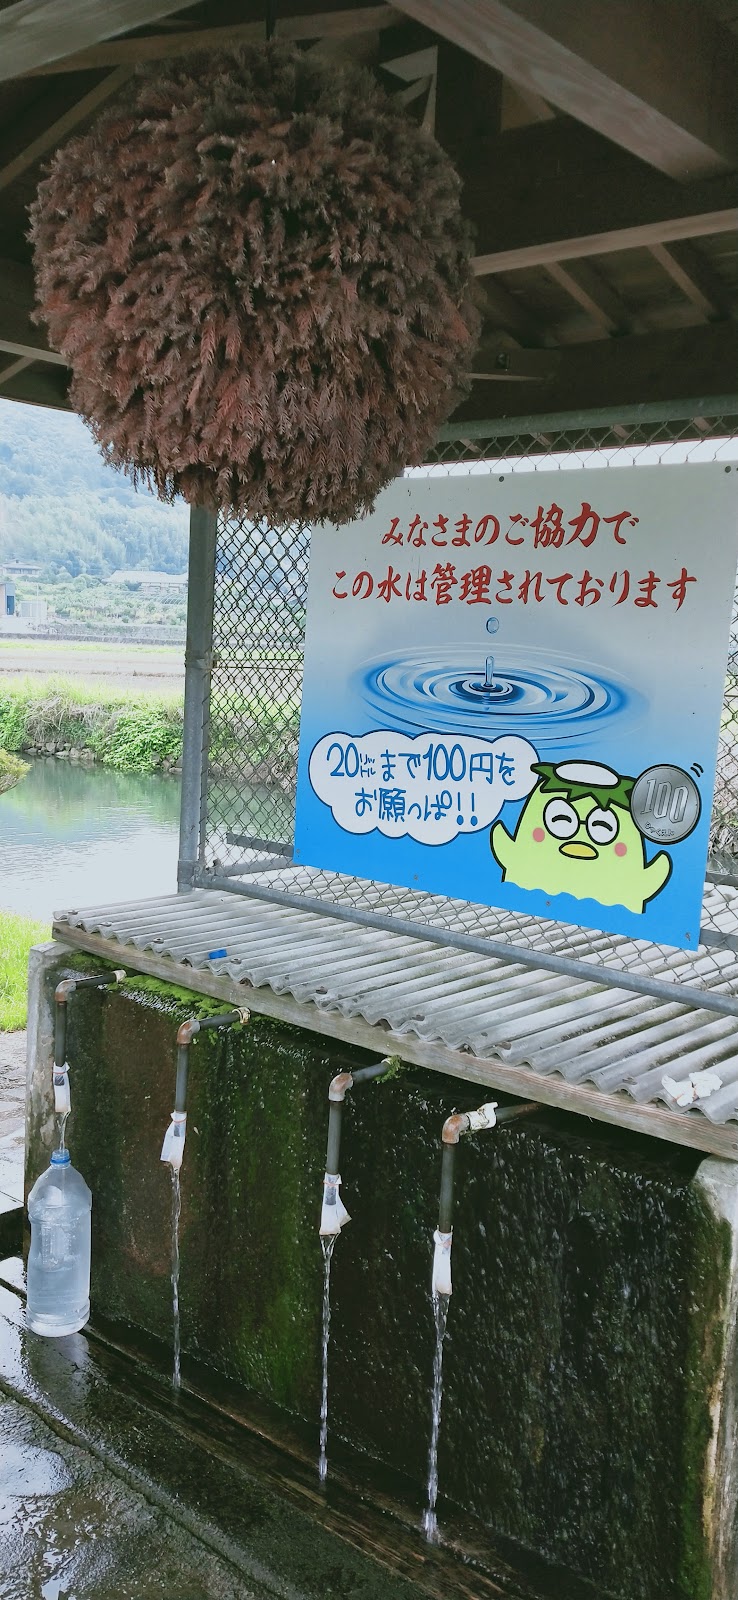 尾田川公園 湧水水くみ場